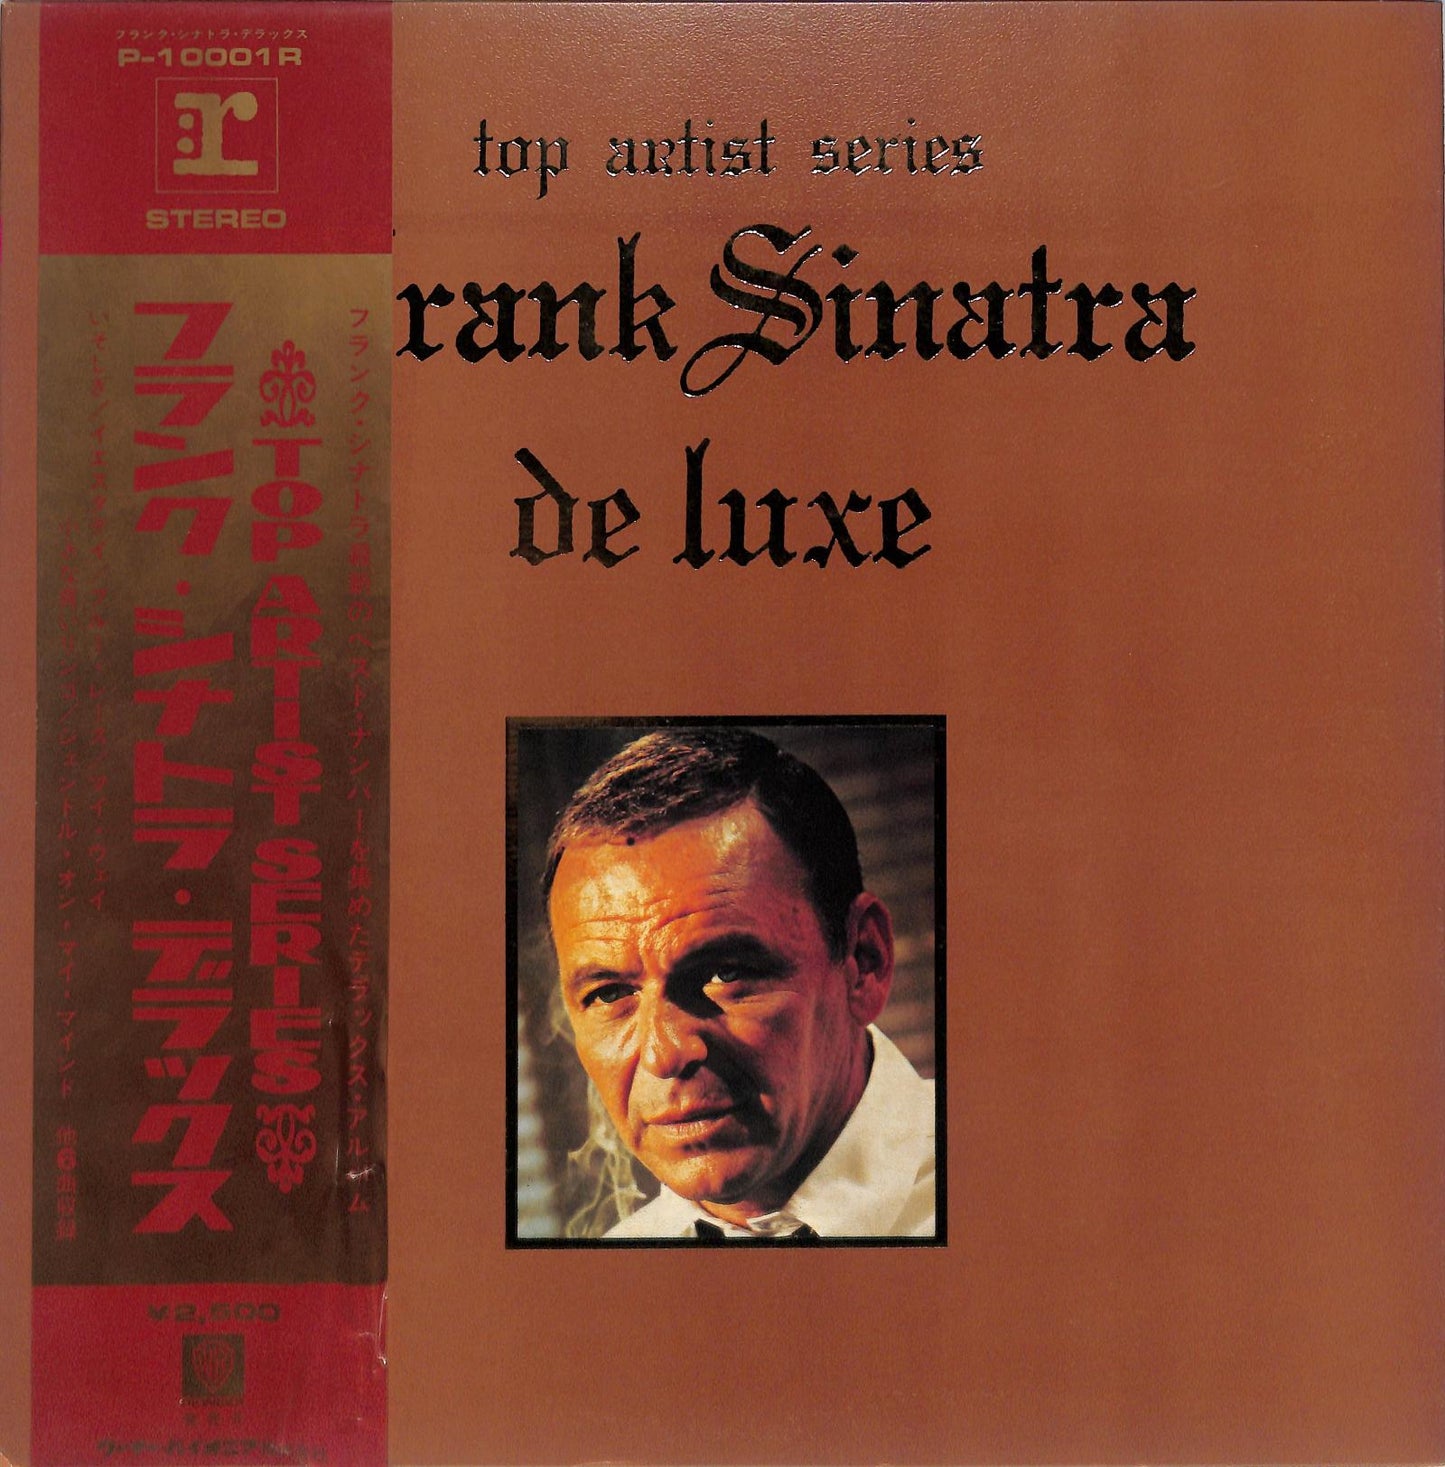 FRANK SINATRA - Frank Sinatra De Luxe